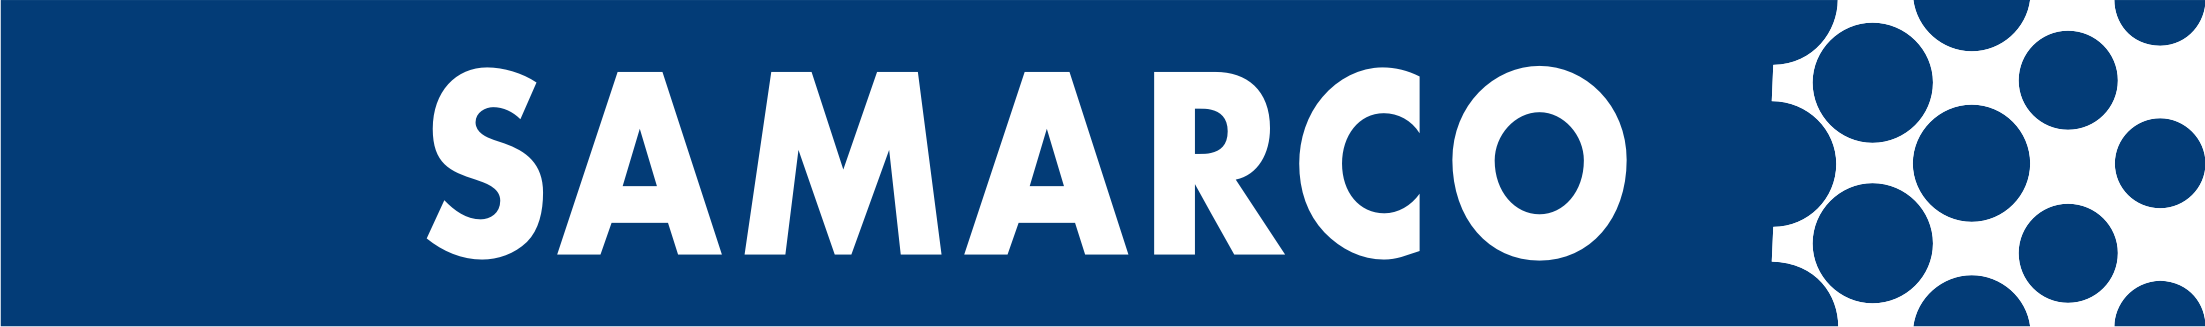 Samarco-logo-large